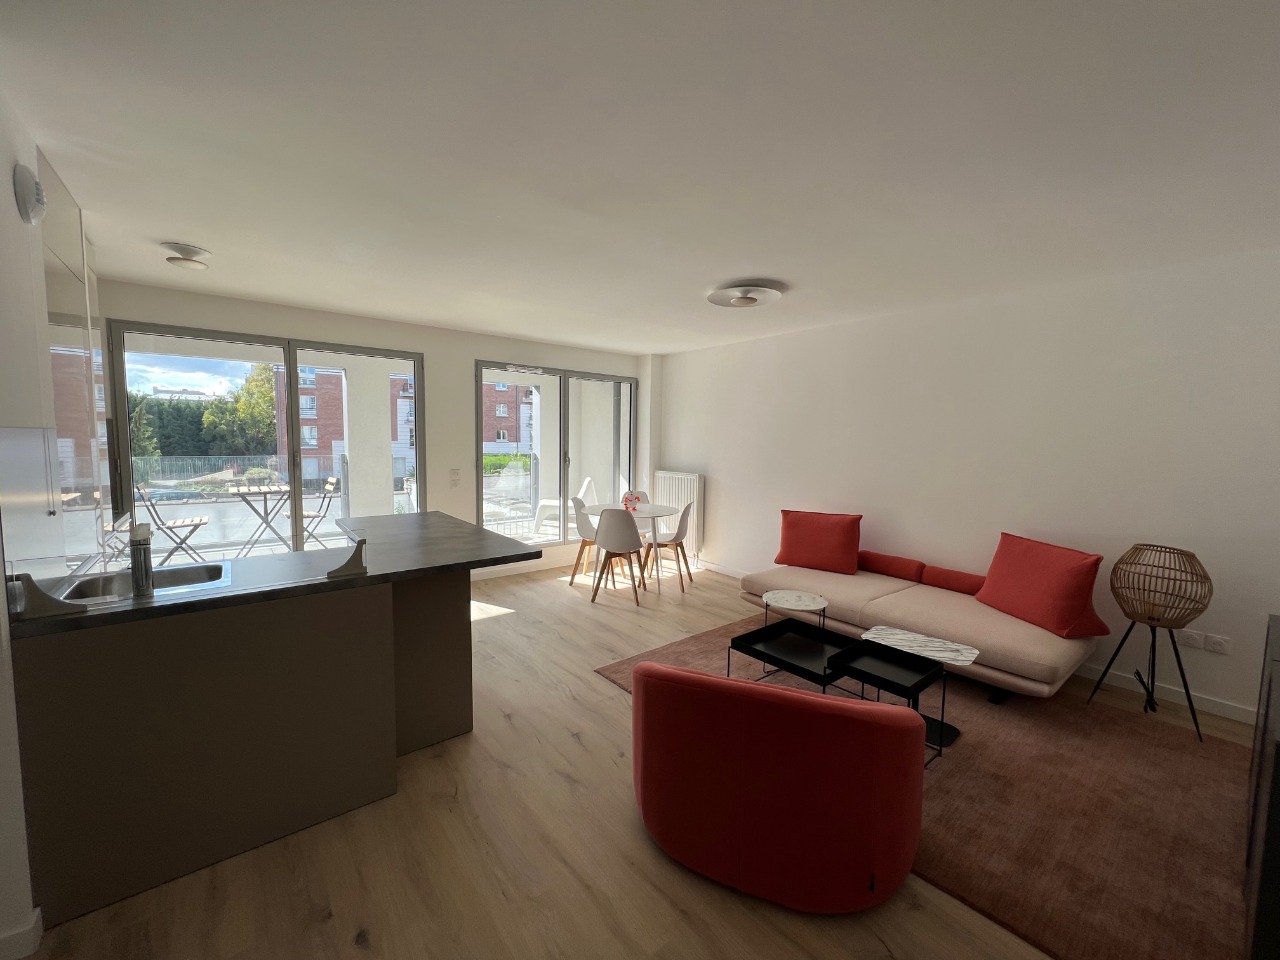 Vente appartement 59000 Lille - Secteur Vauban - Spacieux T3 avec terrasse